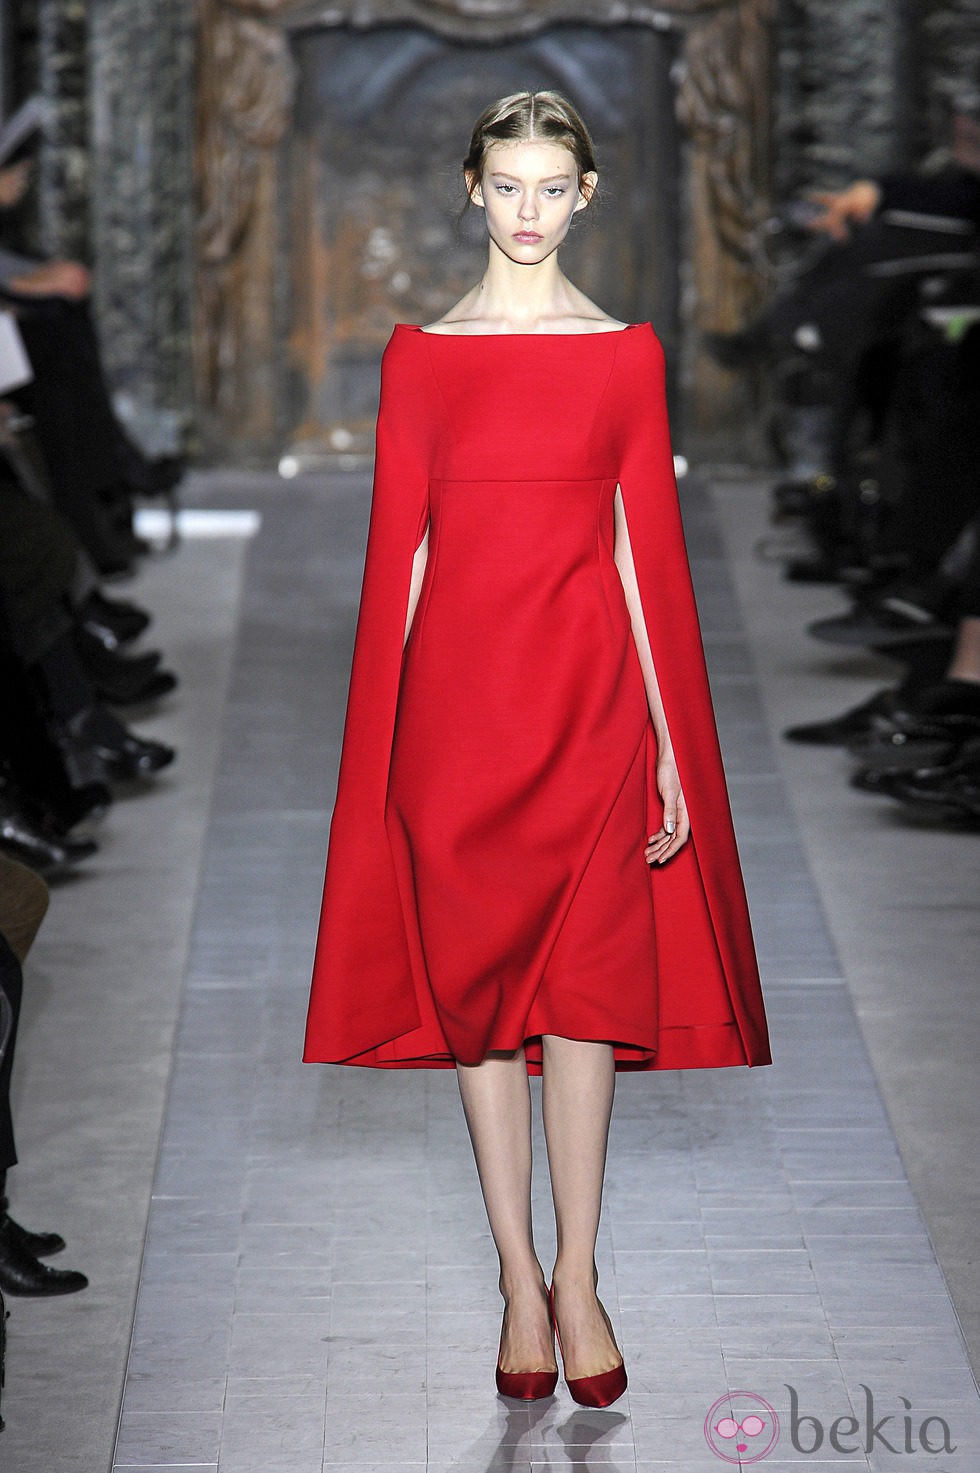 Vestido rojo con capa de la colección primavera/verano 2013 de Valentino en la Semana de la Alta Costura de París